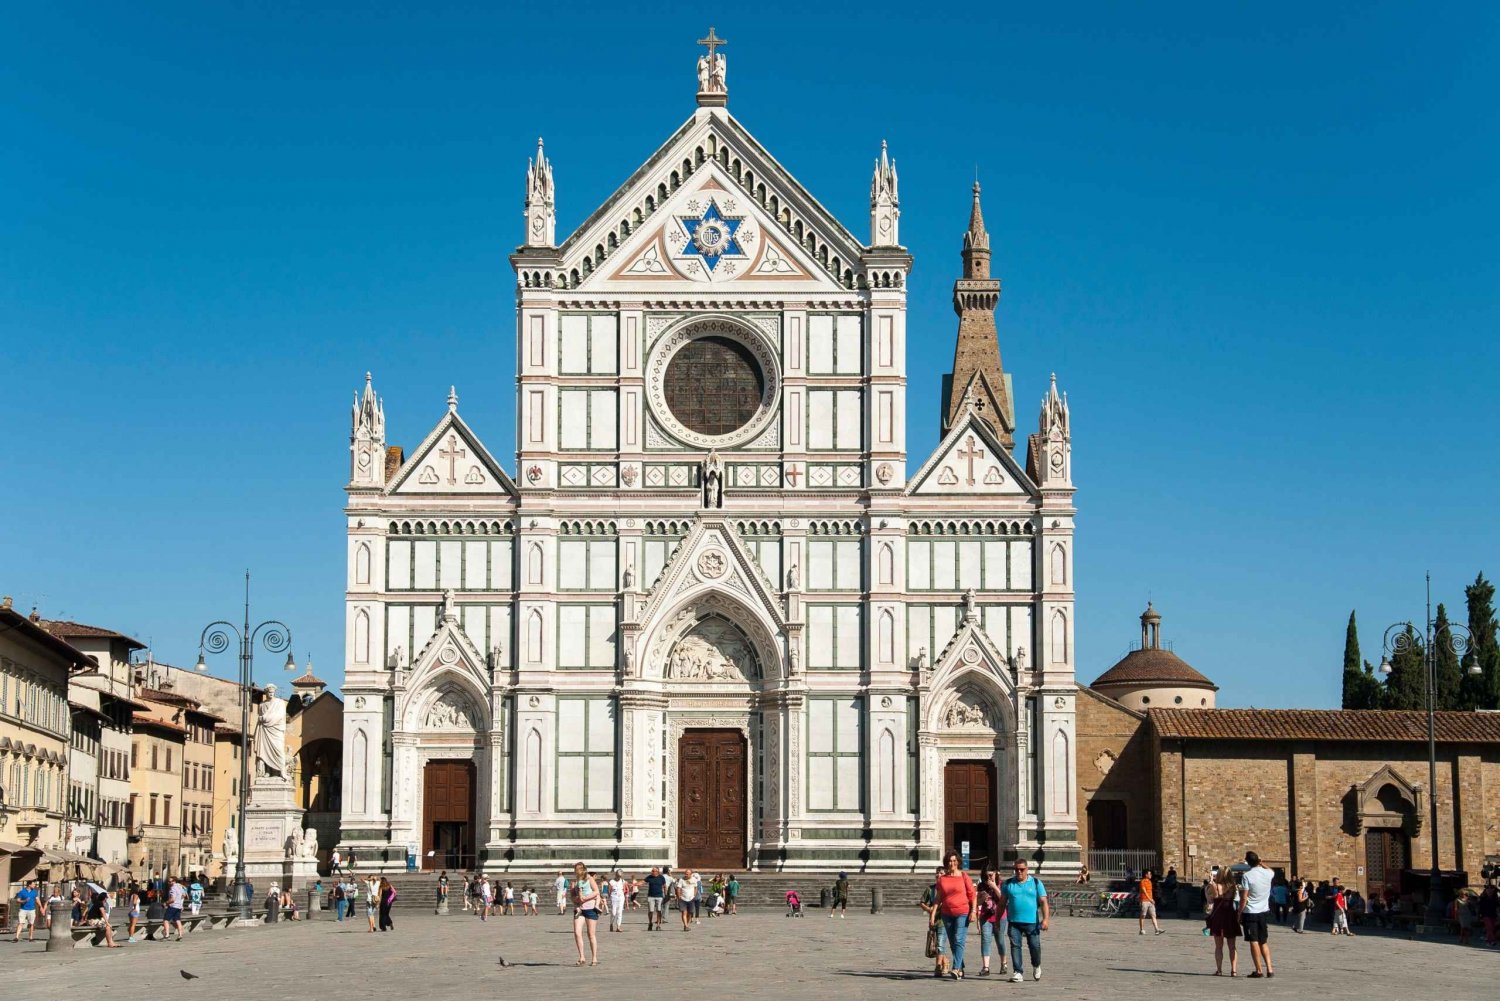 Rondleiding door de kerk van Santa Croce in Florence